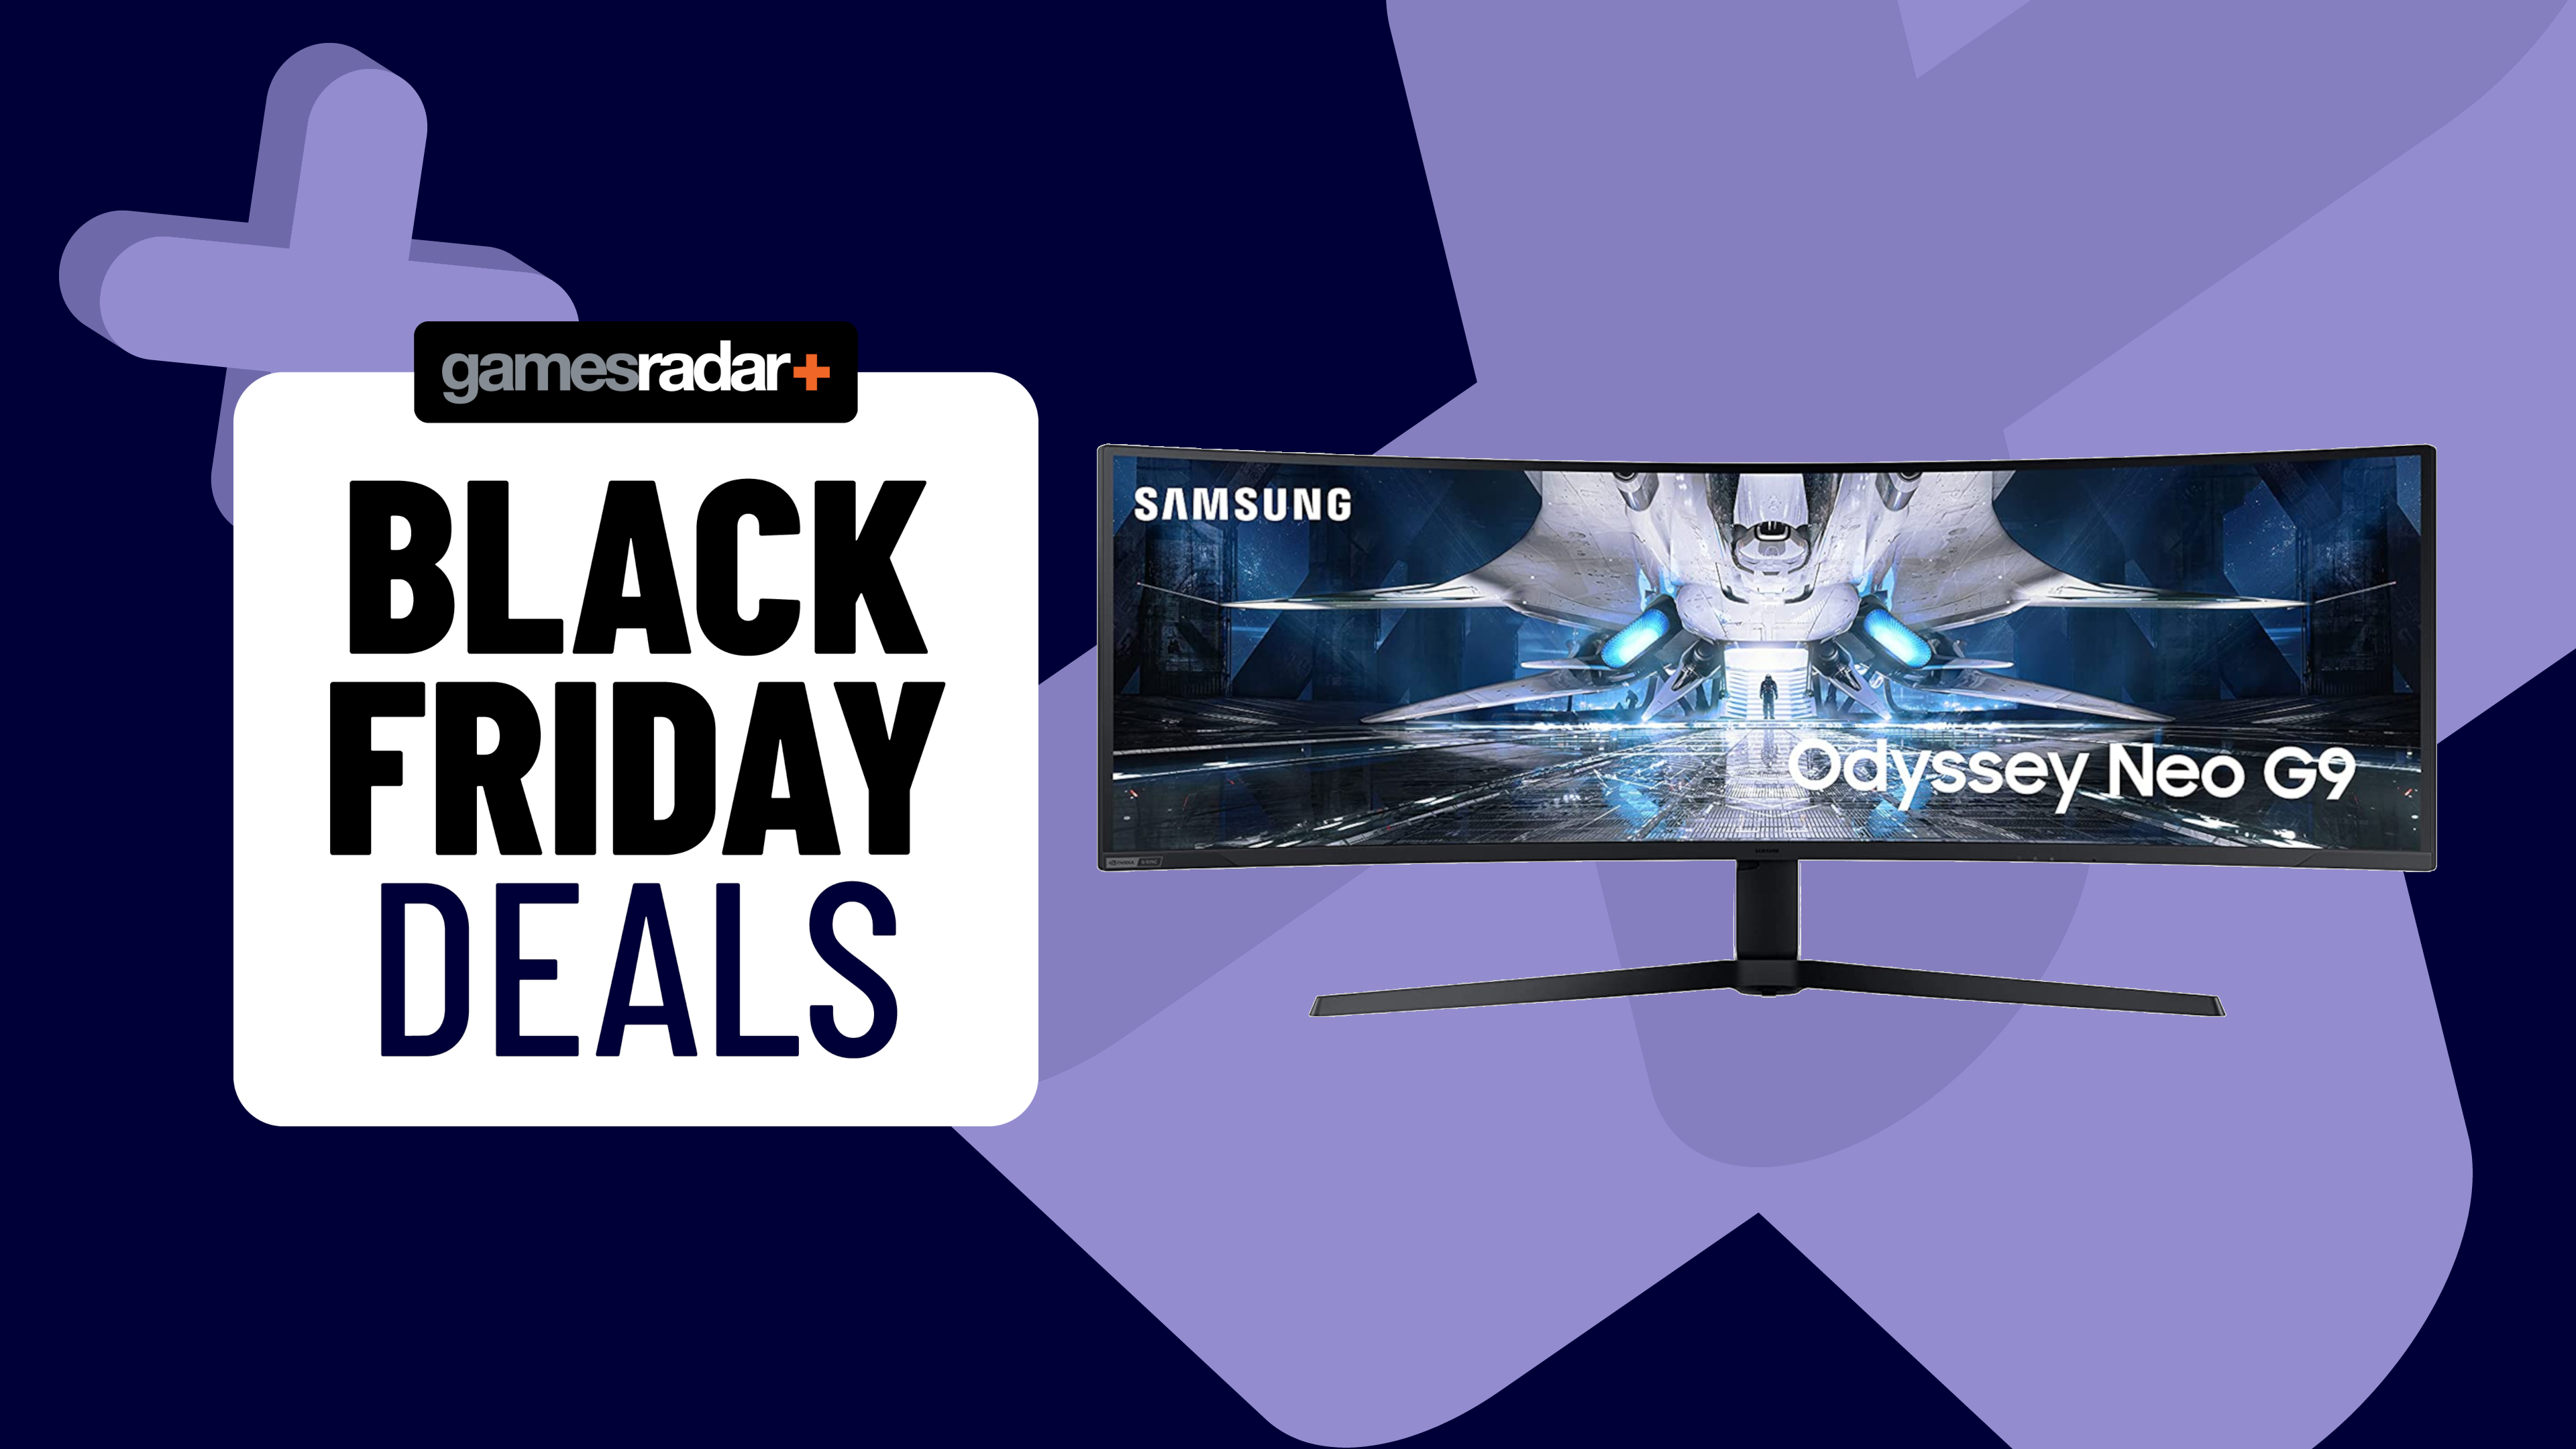 Black Friday gaming monitor Samsung Neo G9 deal